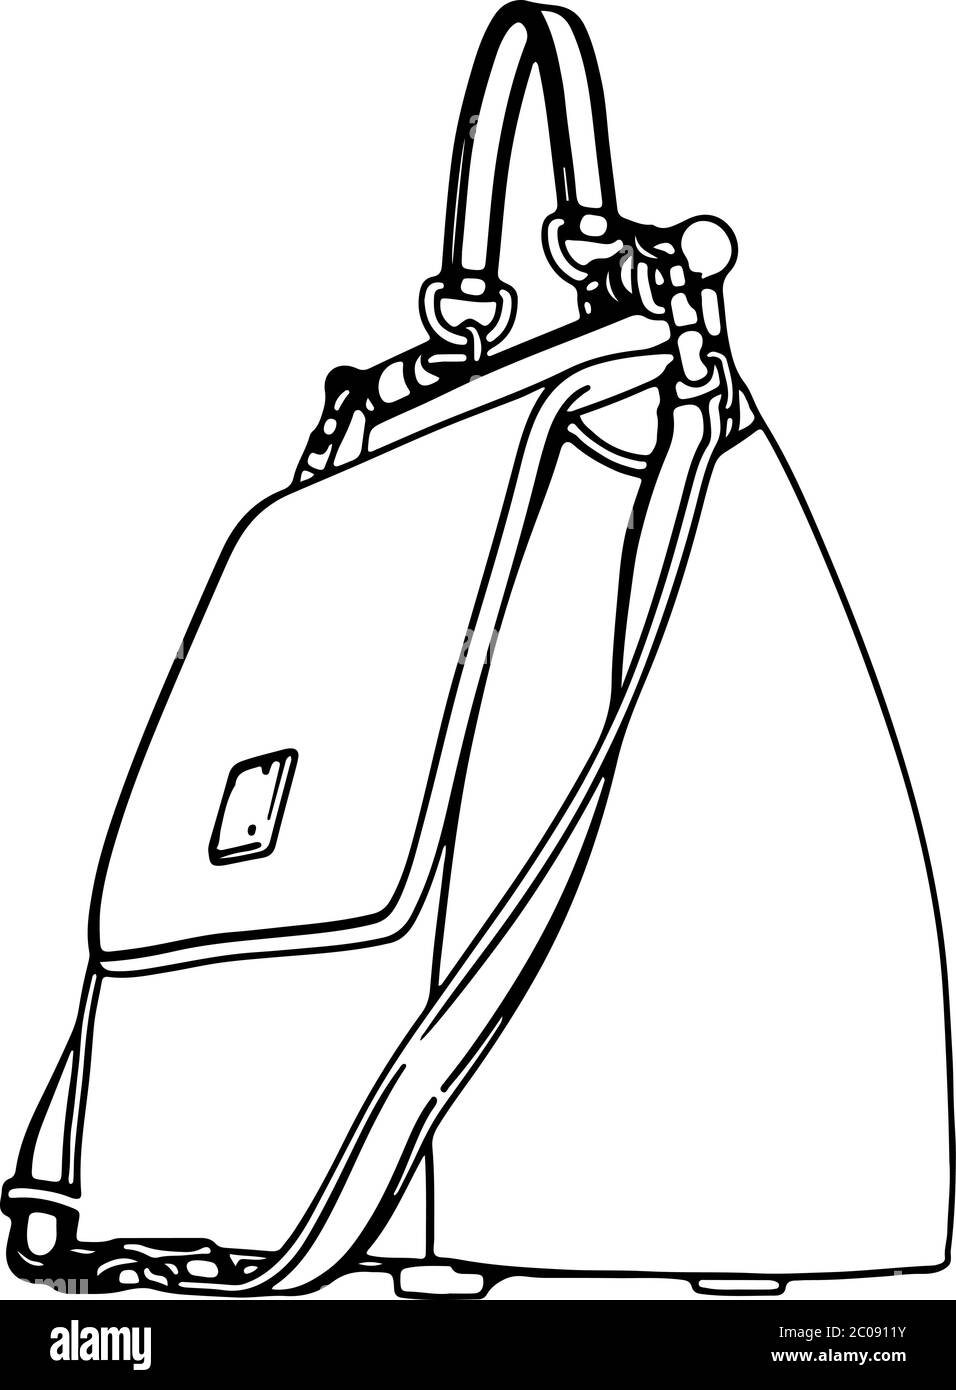 dessin d'un sac à main vectoriel sur fond blanc Image Vectorielle Stock -  Alamy